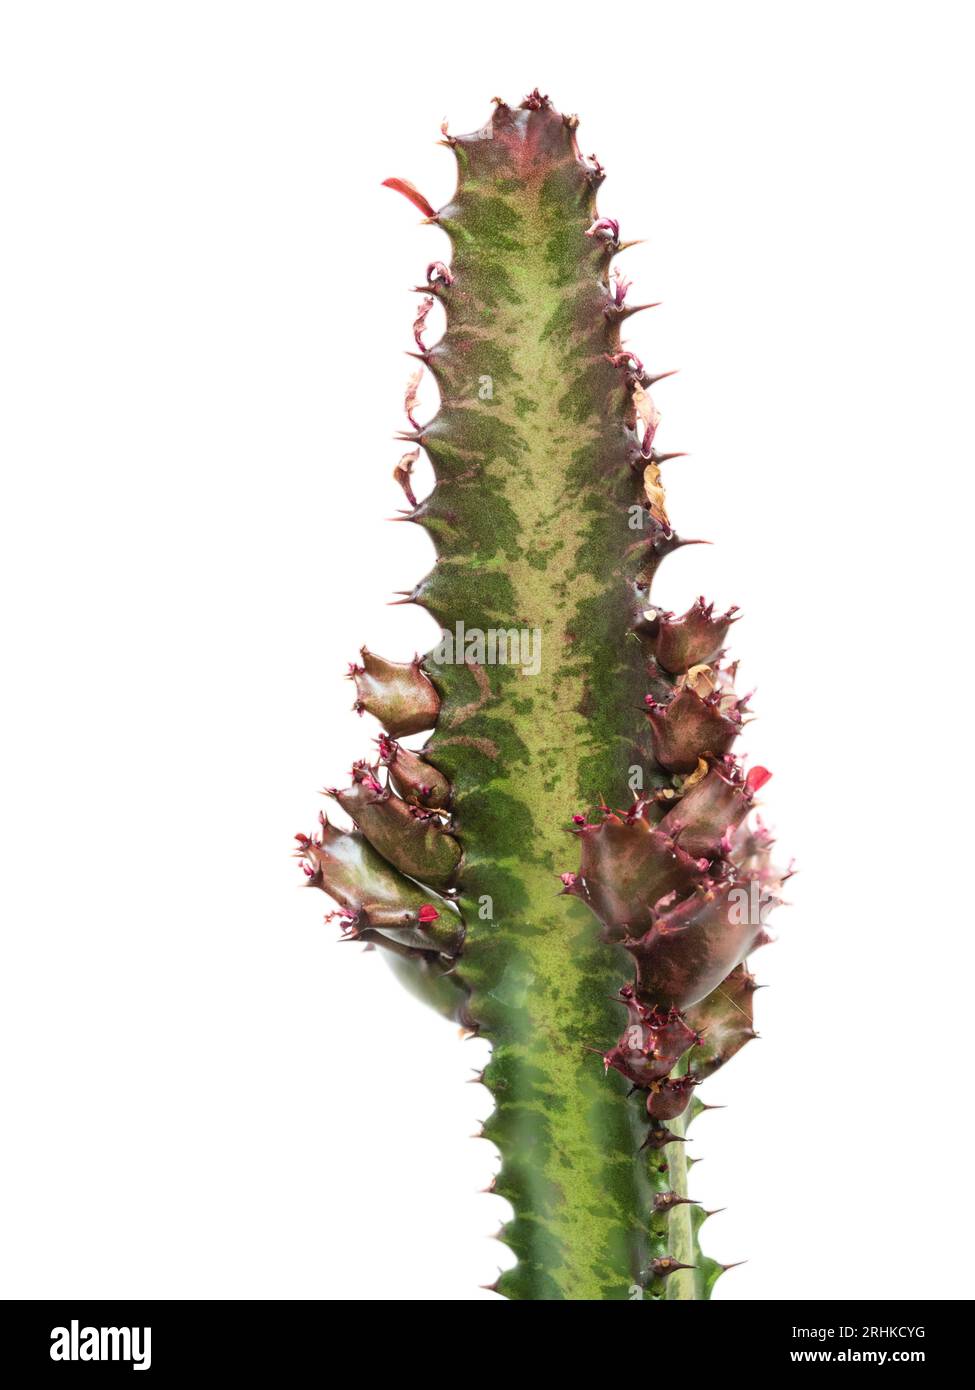 Stamm mit sich entwickelnden Zweigen des zarten Hauses oder Gewächshauses Sukkulent, Euphorbia trigona, afrikanischer Milchbaum Stockfoto